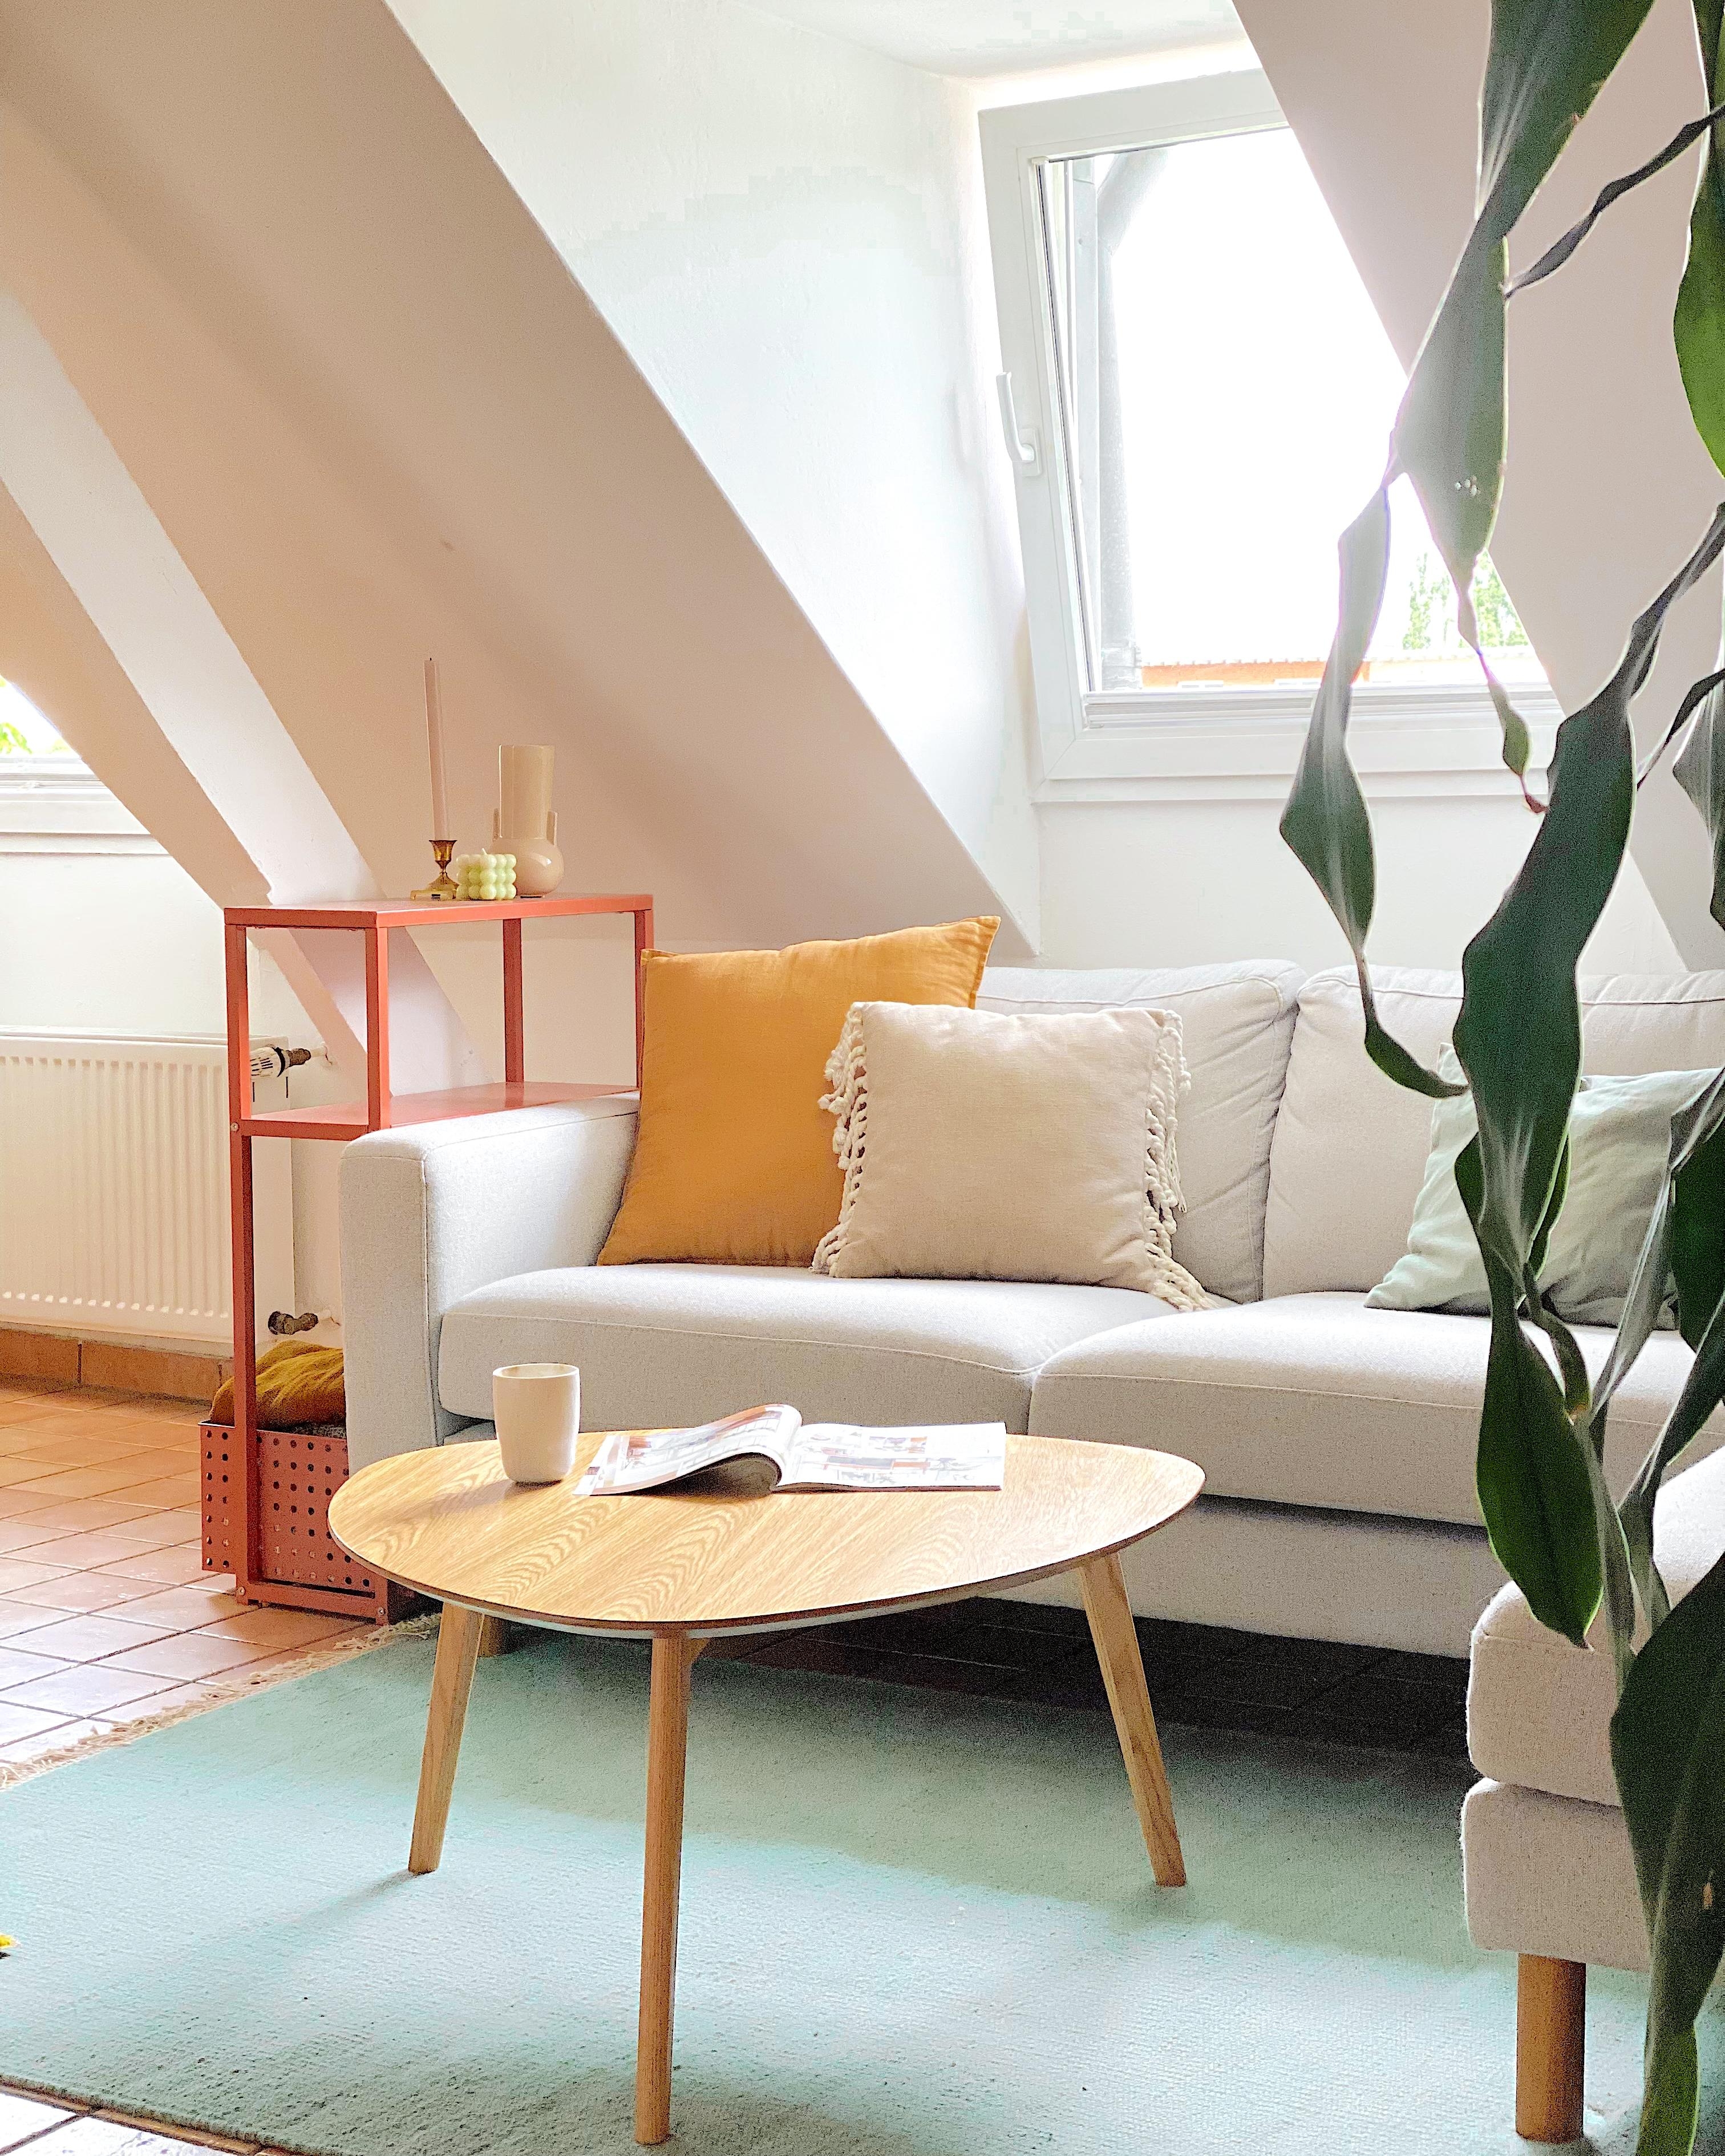 Mit Dachschrägen leben. #wohnzimmer #dachschrägen #maisonette #untermdach #colorfulhome